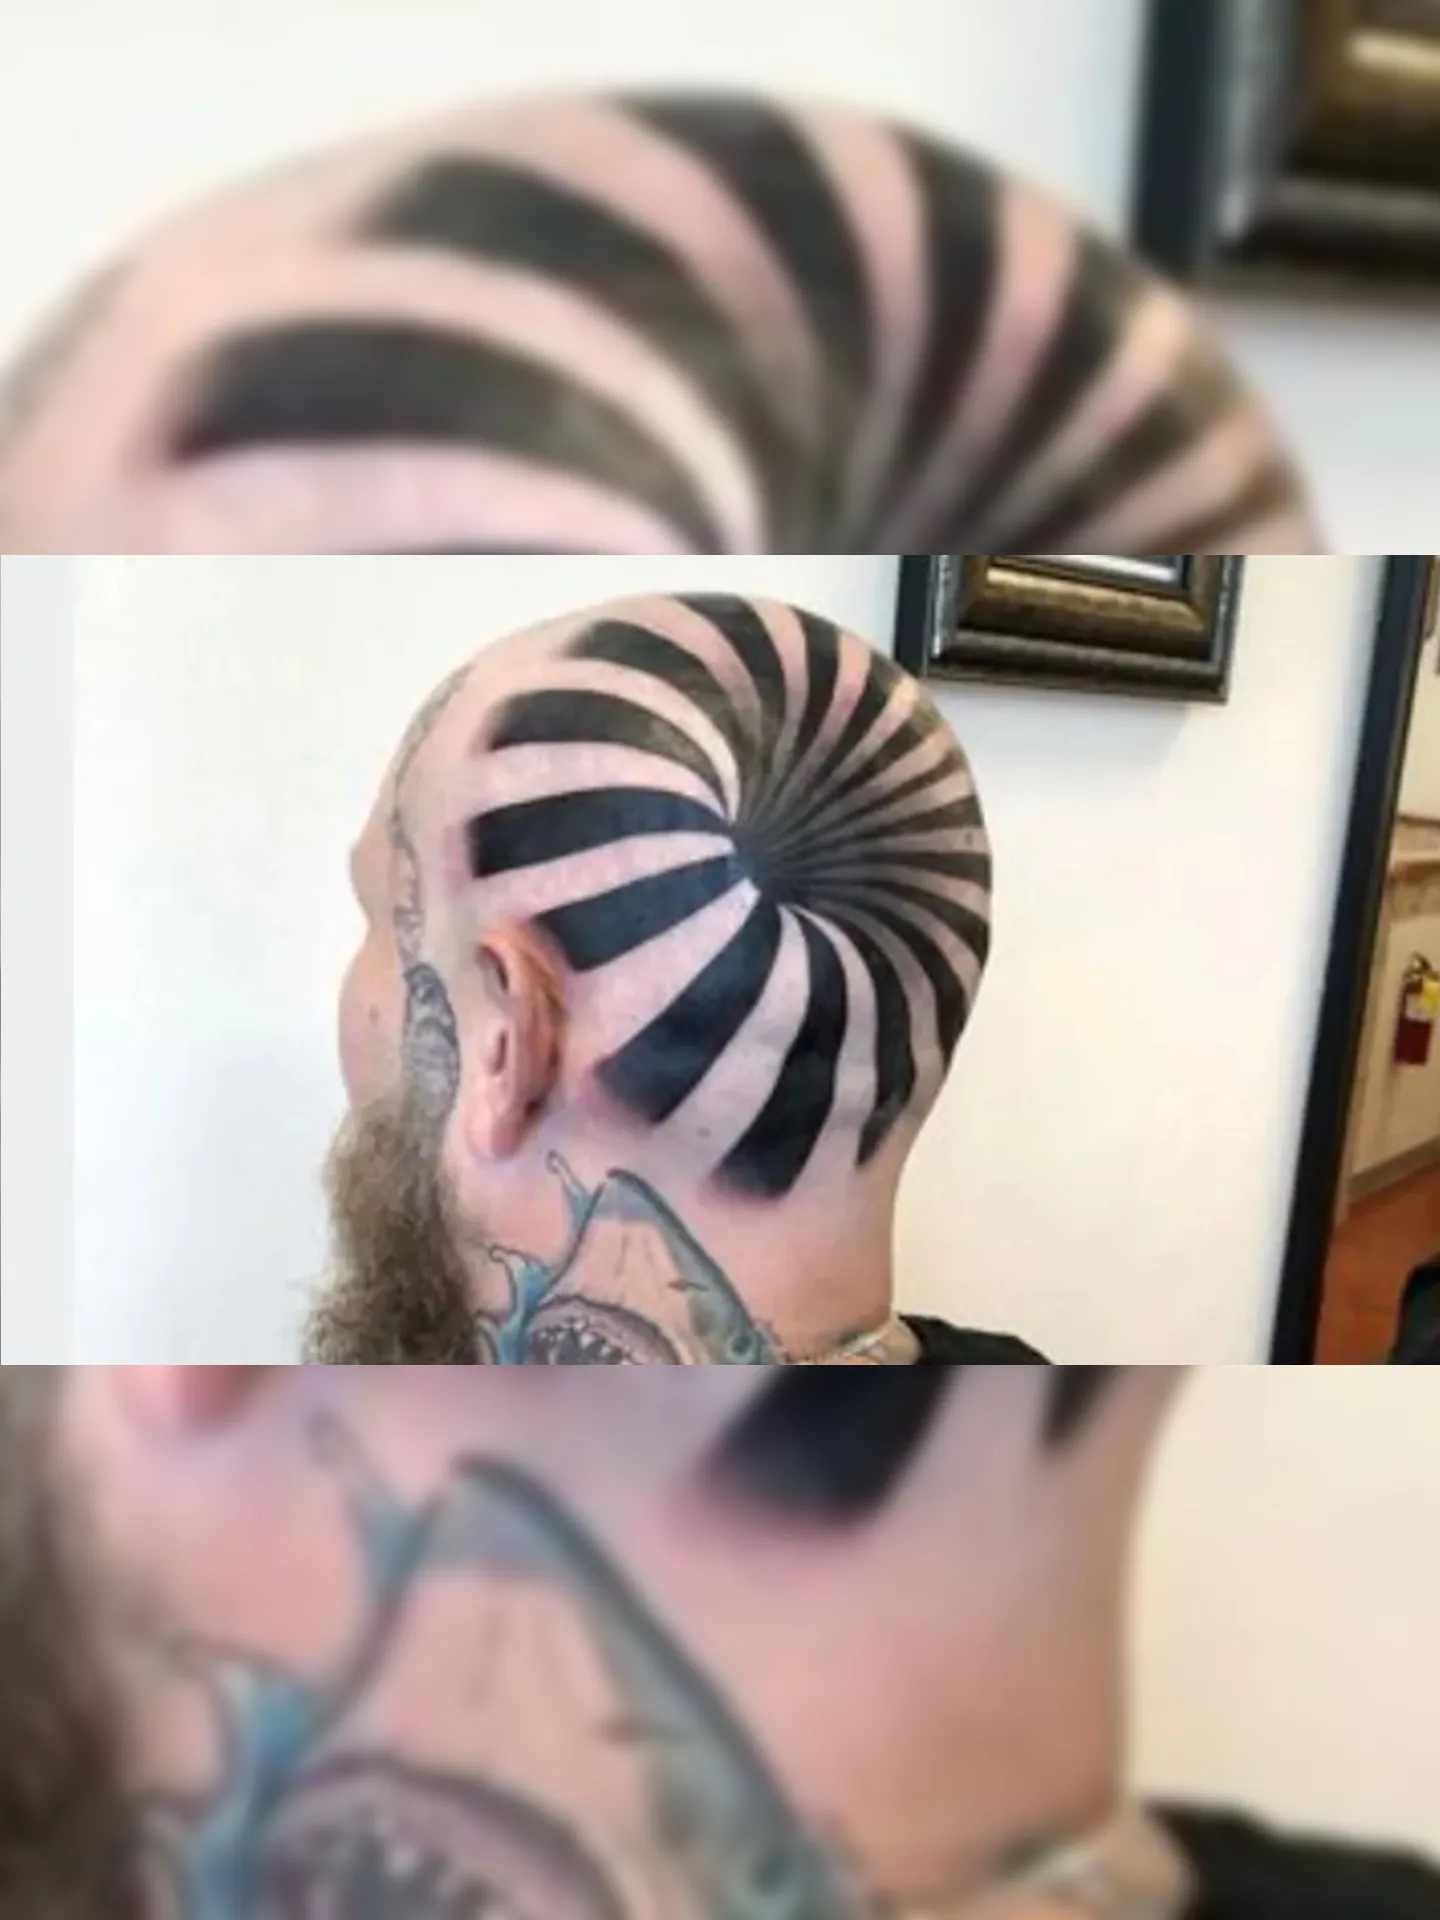 Matt Pehrson tatuou a cabeça de um amigo